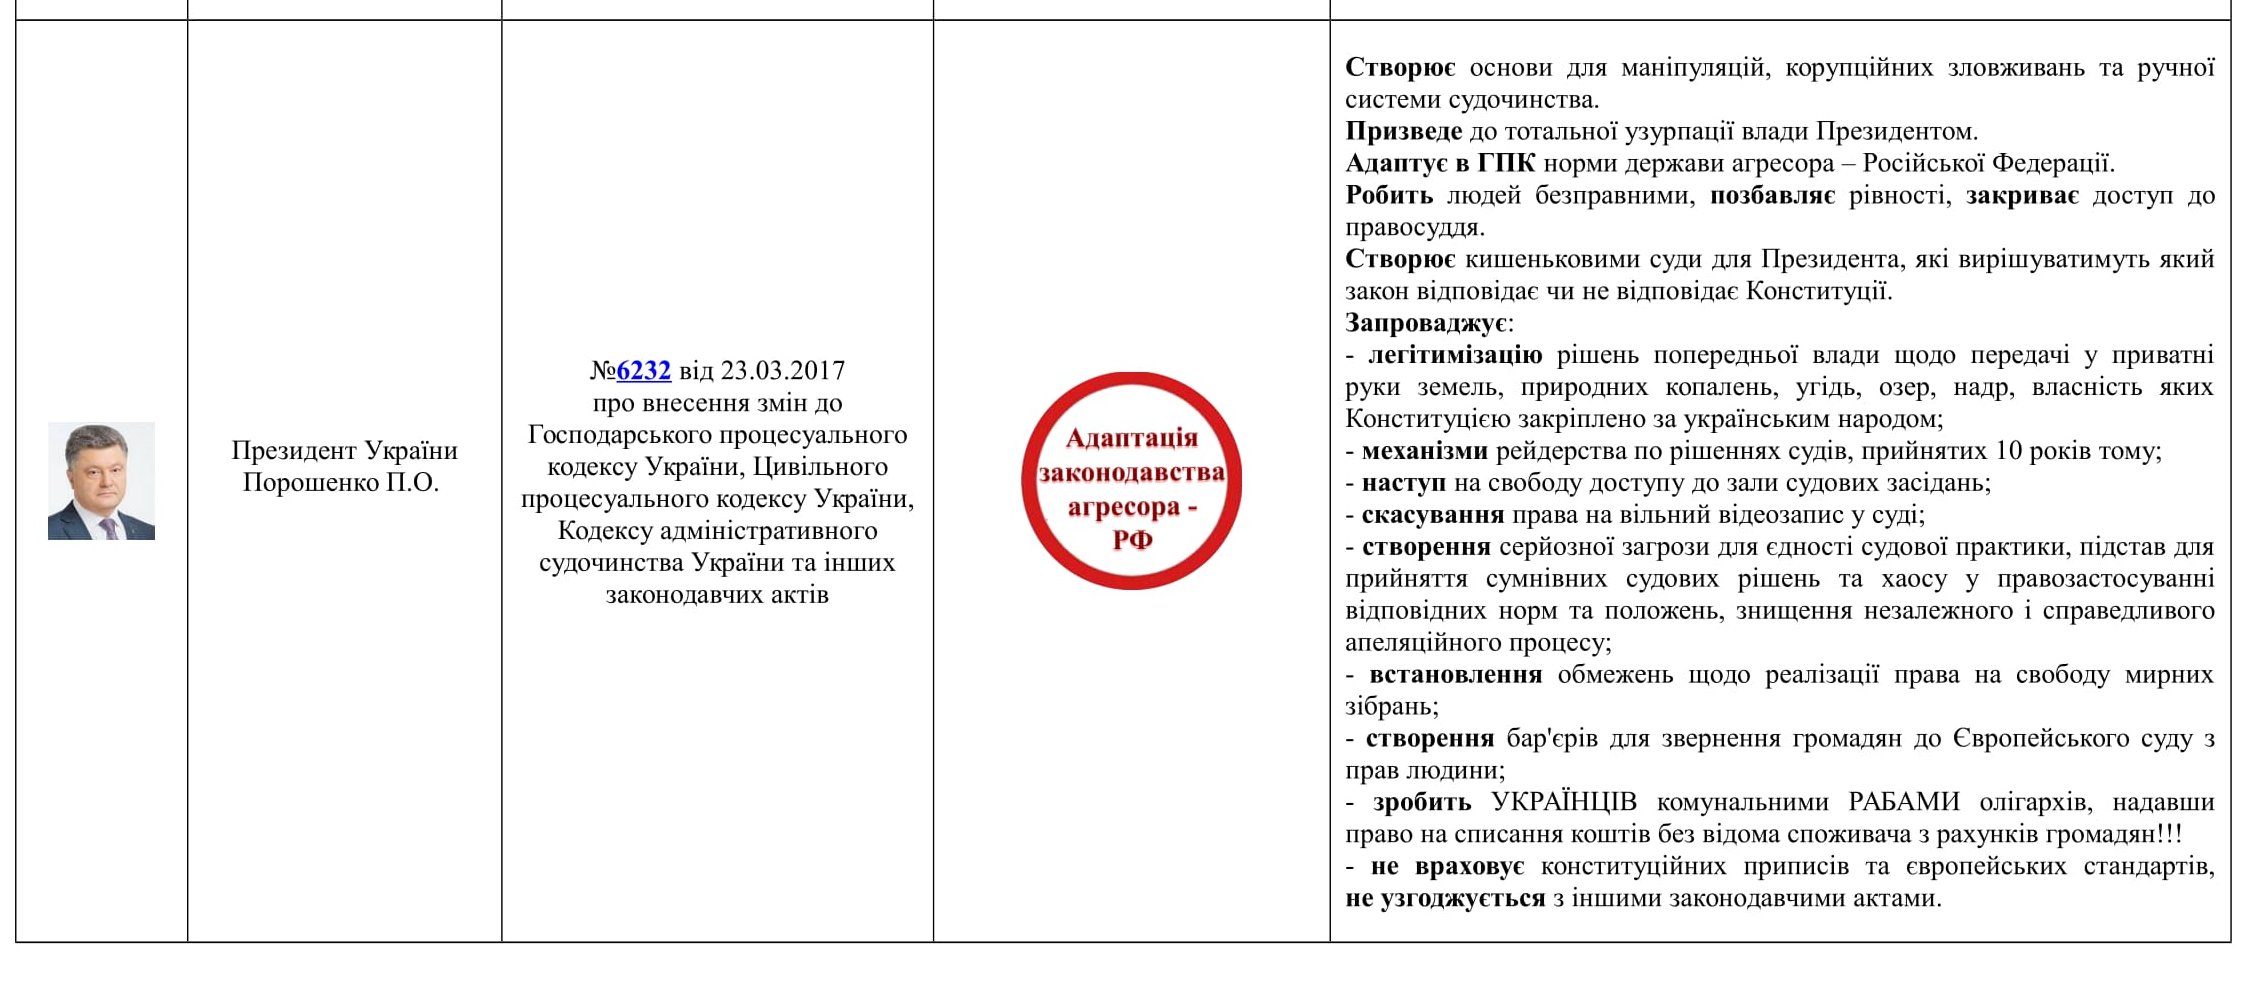 Законодавчі ініціативи з проблематикою «16 січня!» (оновлено станом на 11.03.2018)